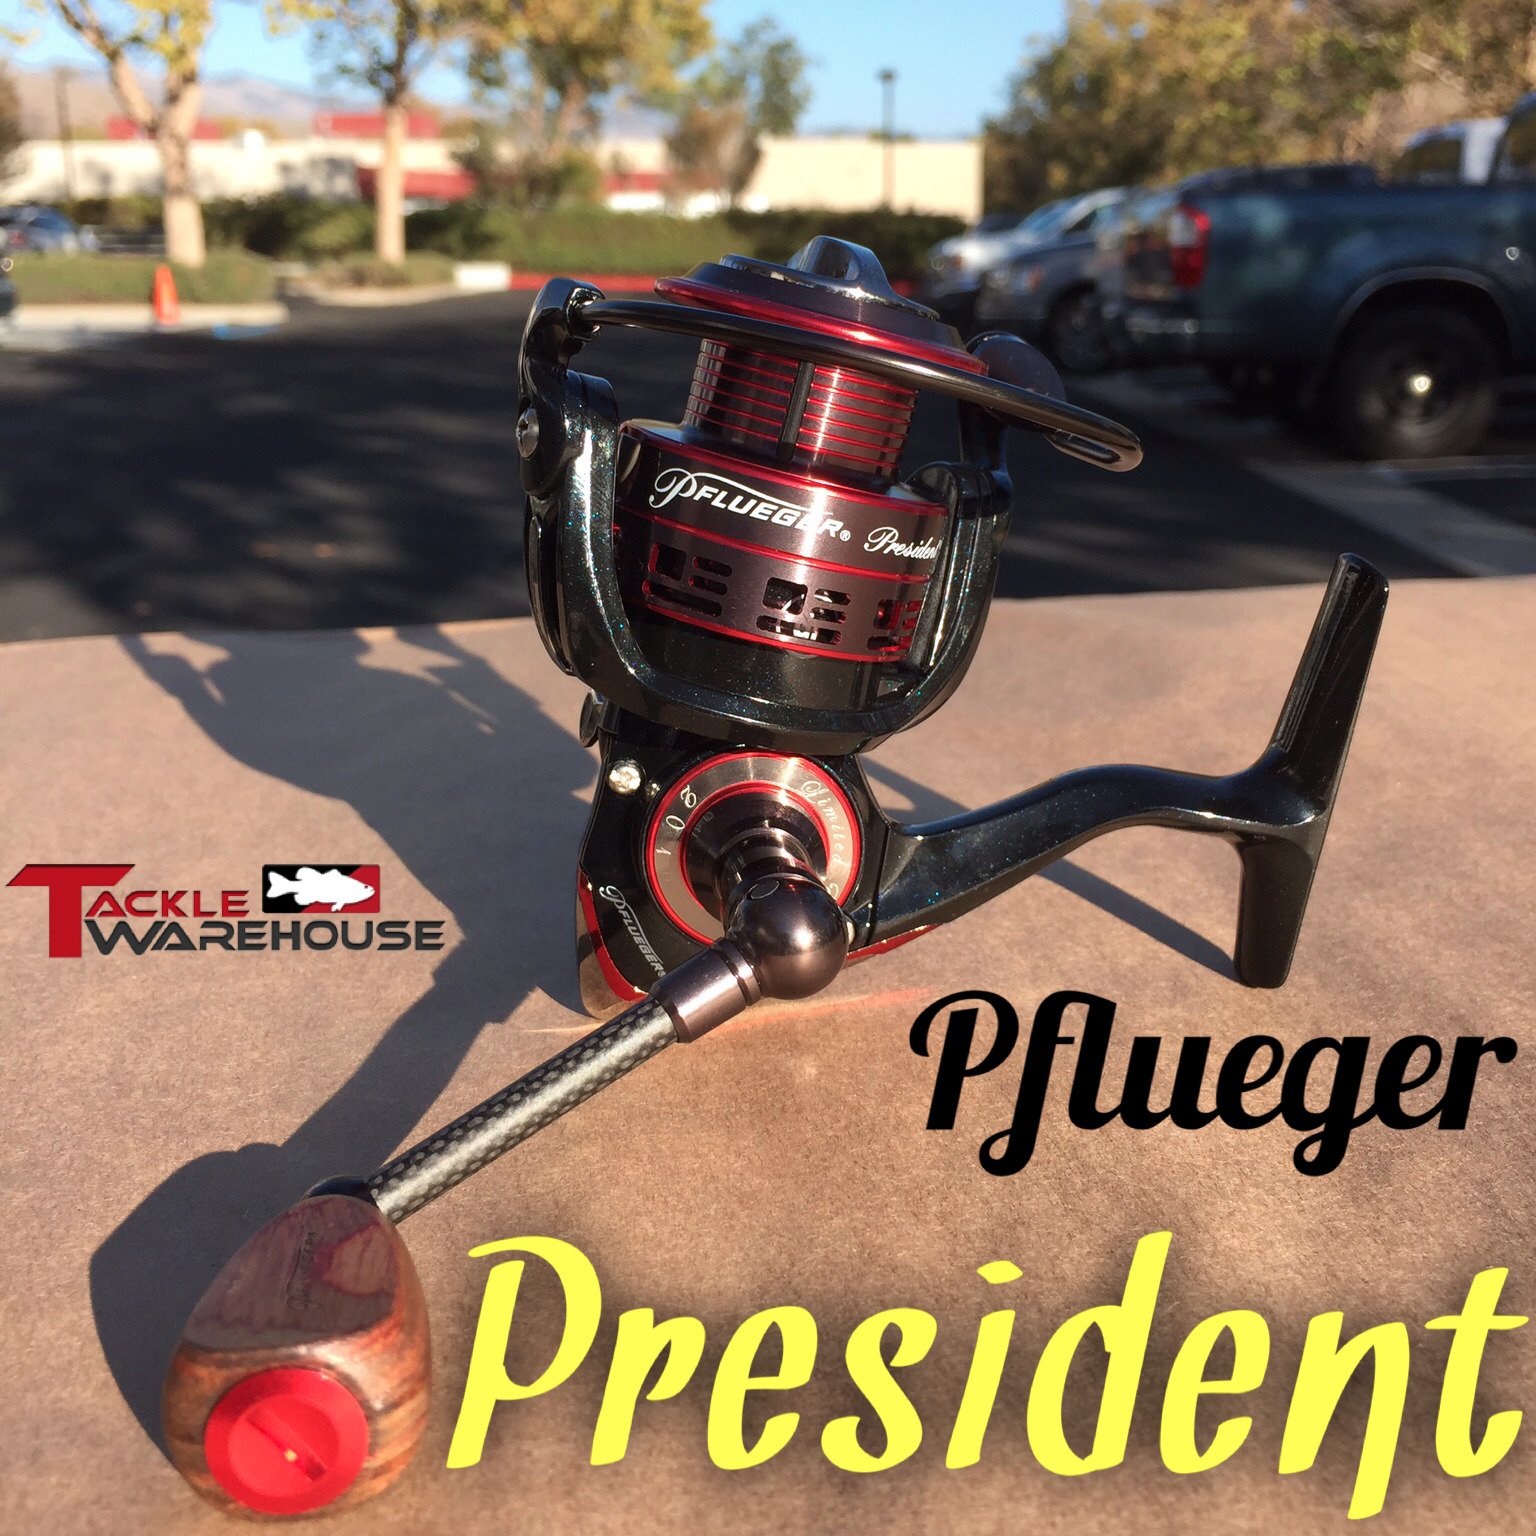 Pflueger President XT Limited Edition Spinning Reel